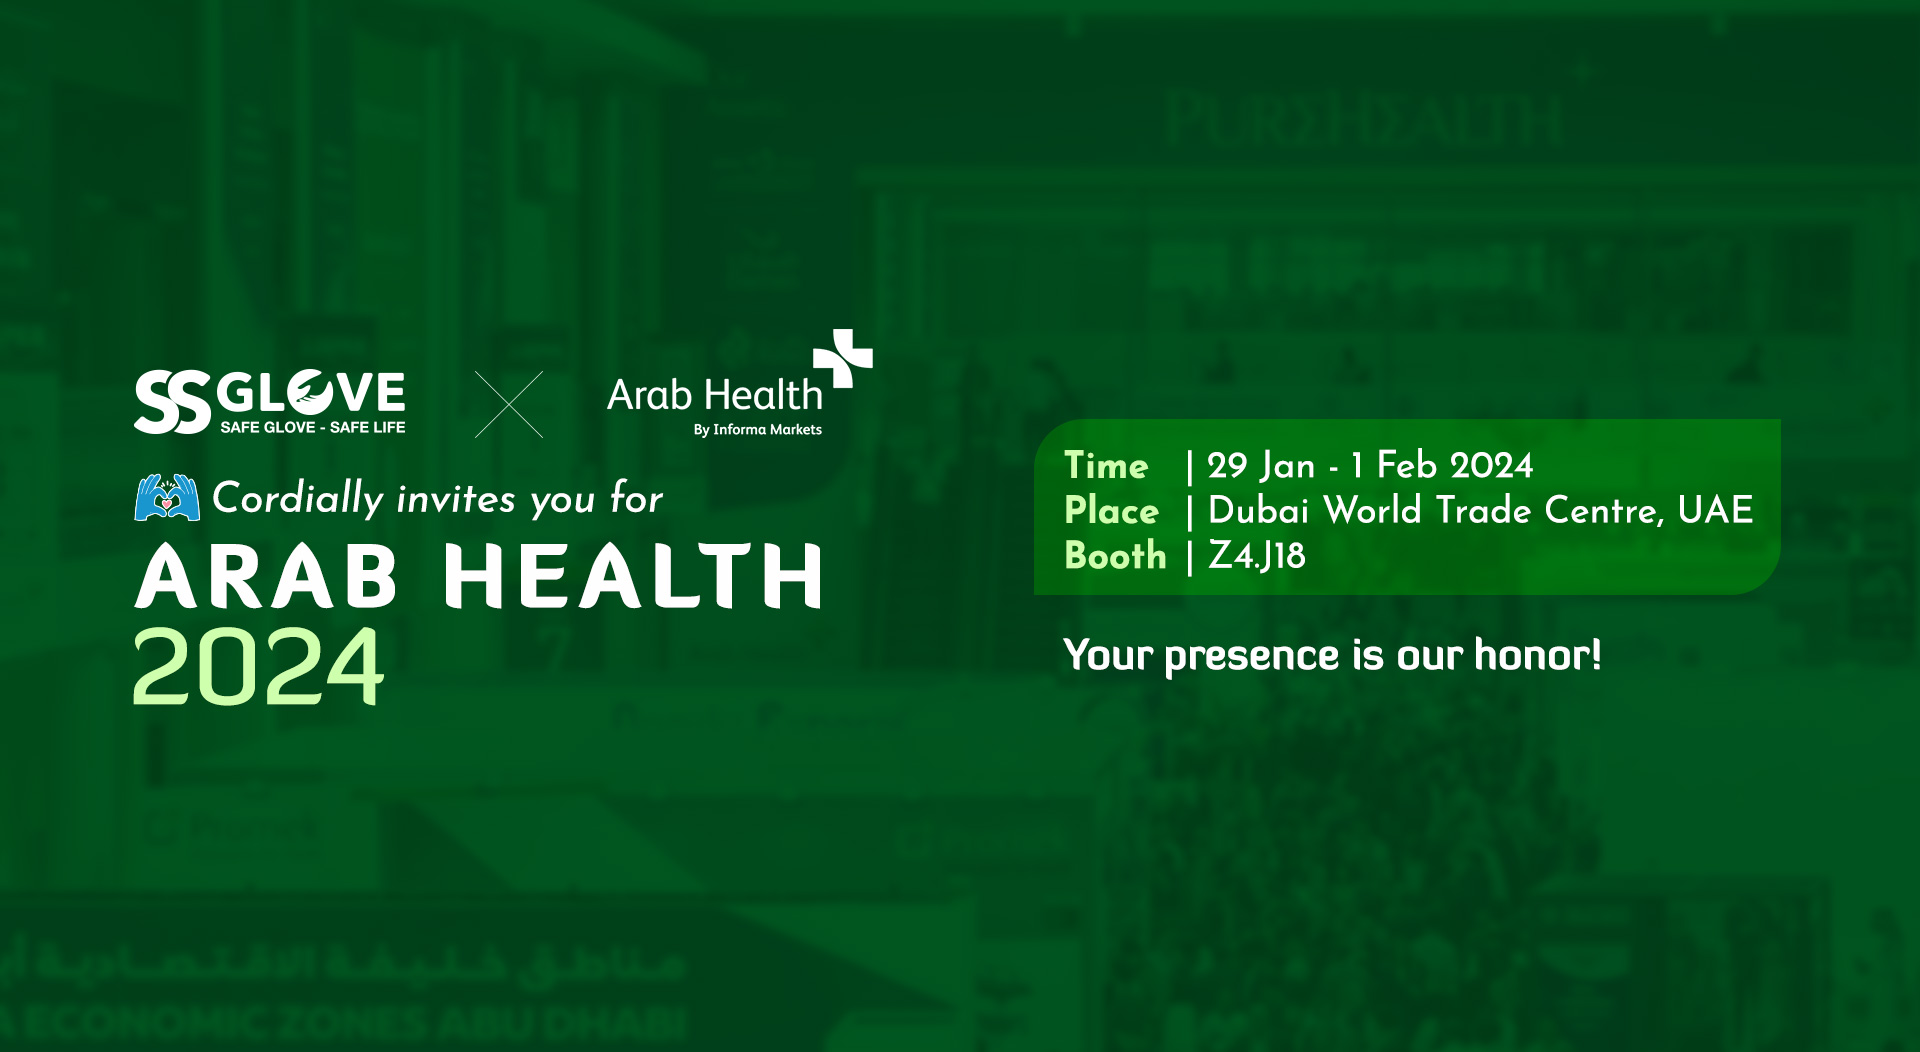 Arab Health 2024 in UAE S&S Glove